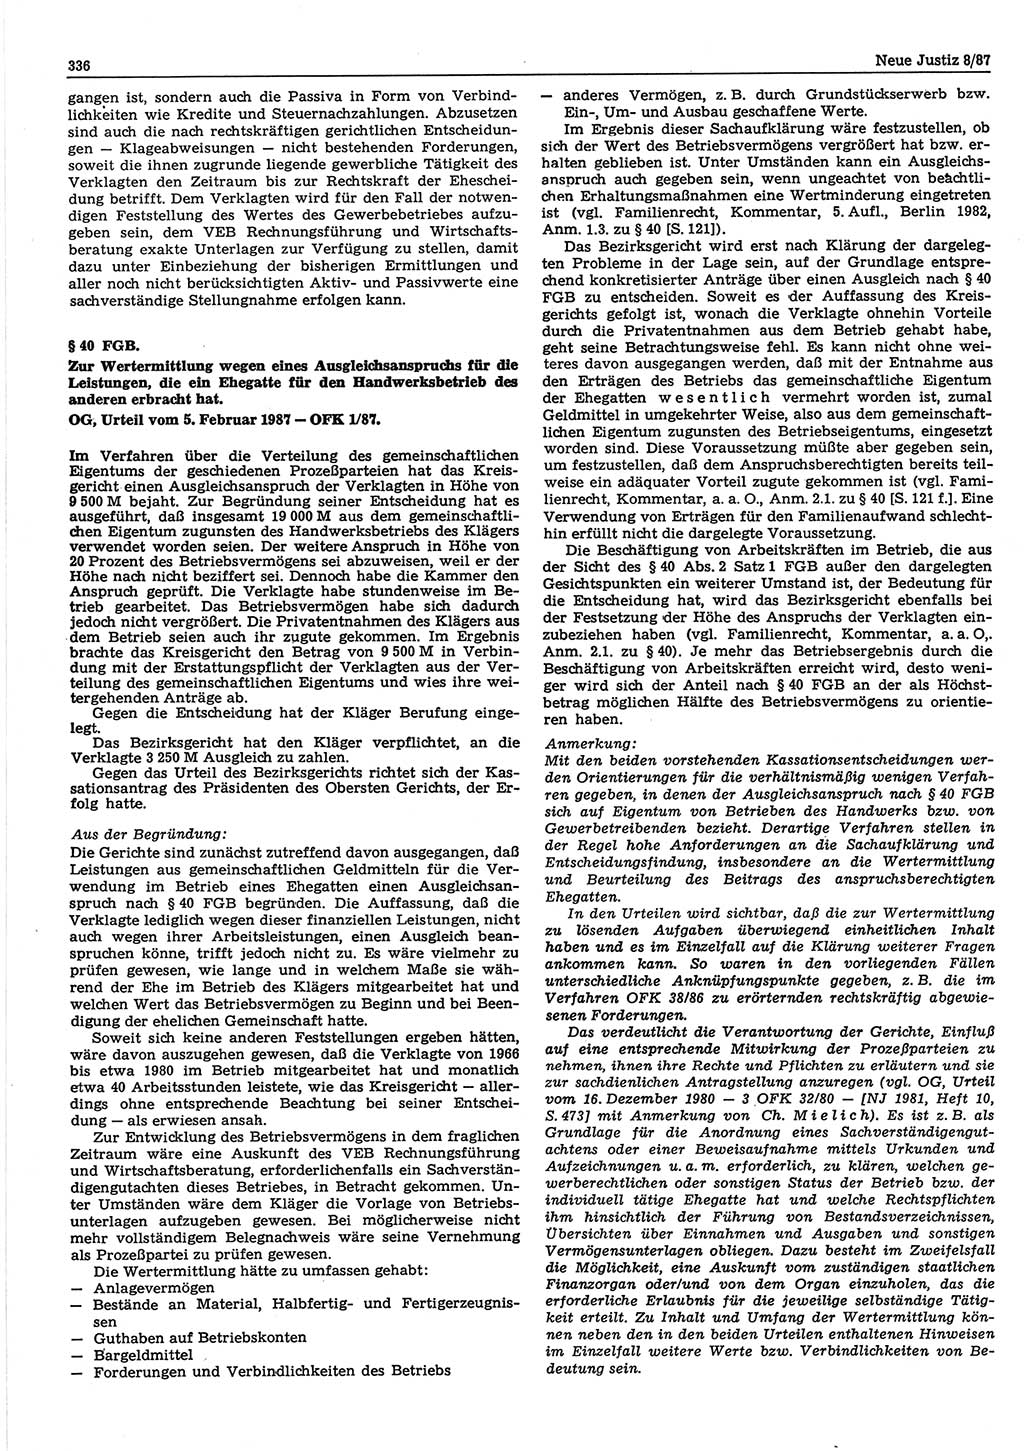 Neue Justiz (NJ), Zeitschrift für sozialistisches Recht und Gesetzlichkeit [Deutsche Demokratische Republik (DDR)], 41. Jahrgang 1987, Seite 336 (NJ DDR 1987, S. 336)